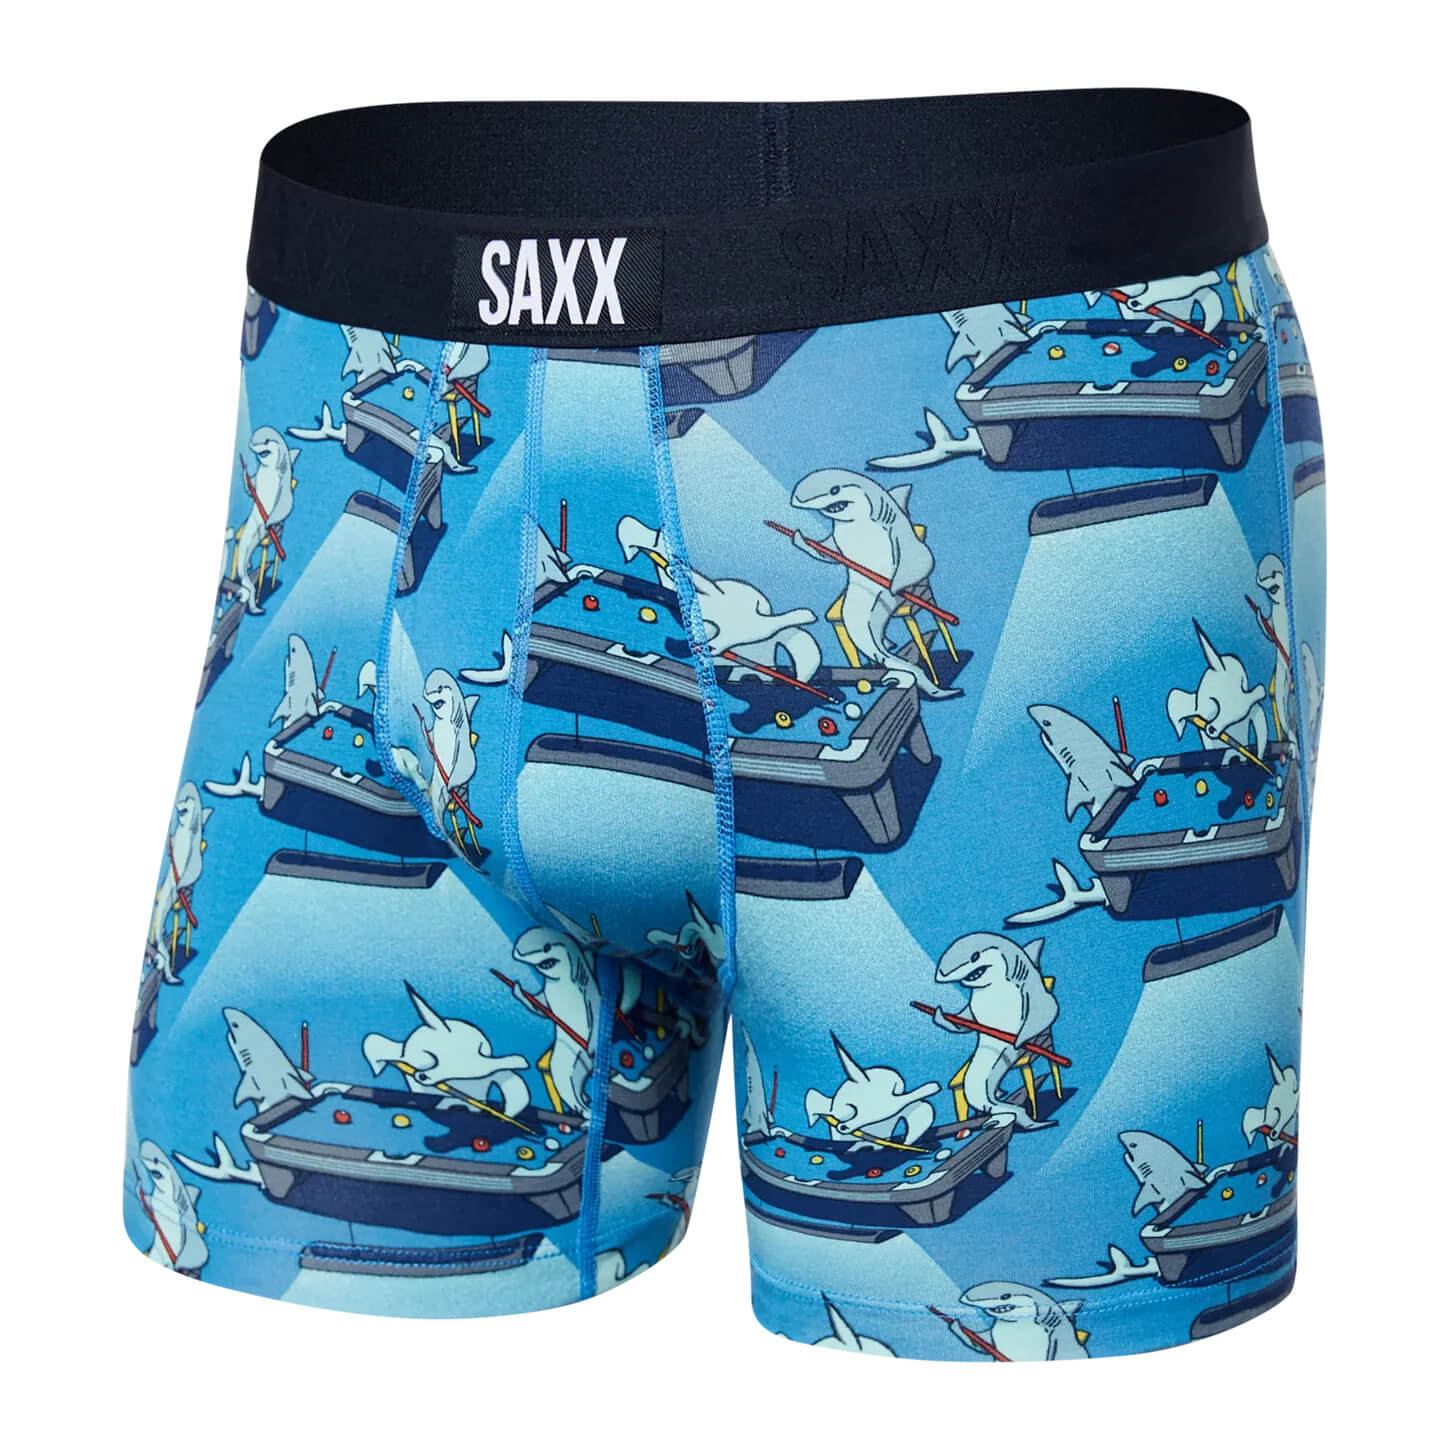 Boxer Vibe super soft Brief Tailgate Blue, Saxx